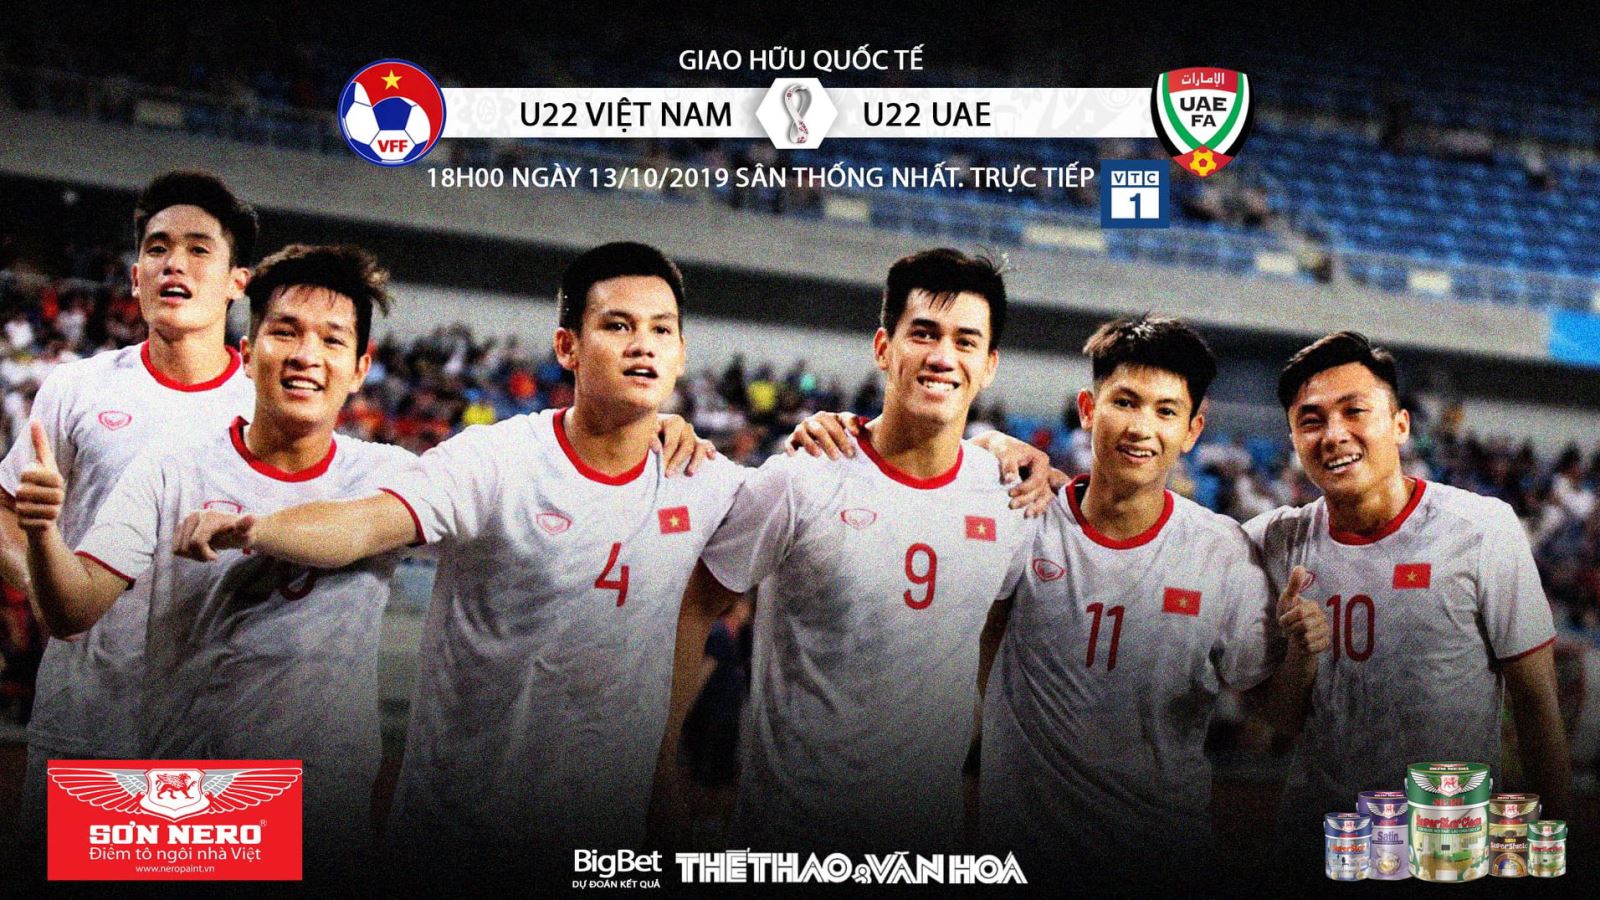 Lịch thi đấu và trực tiếp bóng đá U22 Việt Nam vs U22 UAE. Xem trực tuyến VTC1, VTC3, VTV6